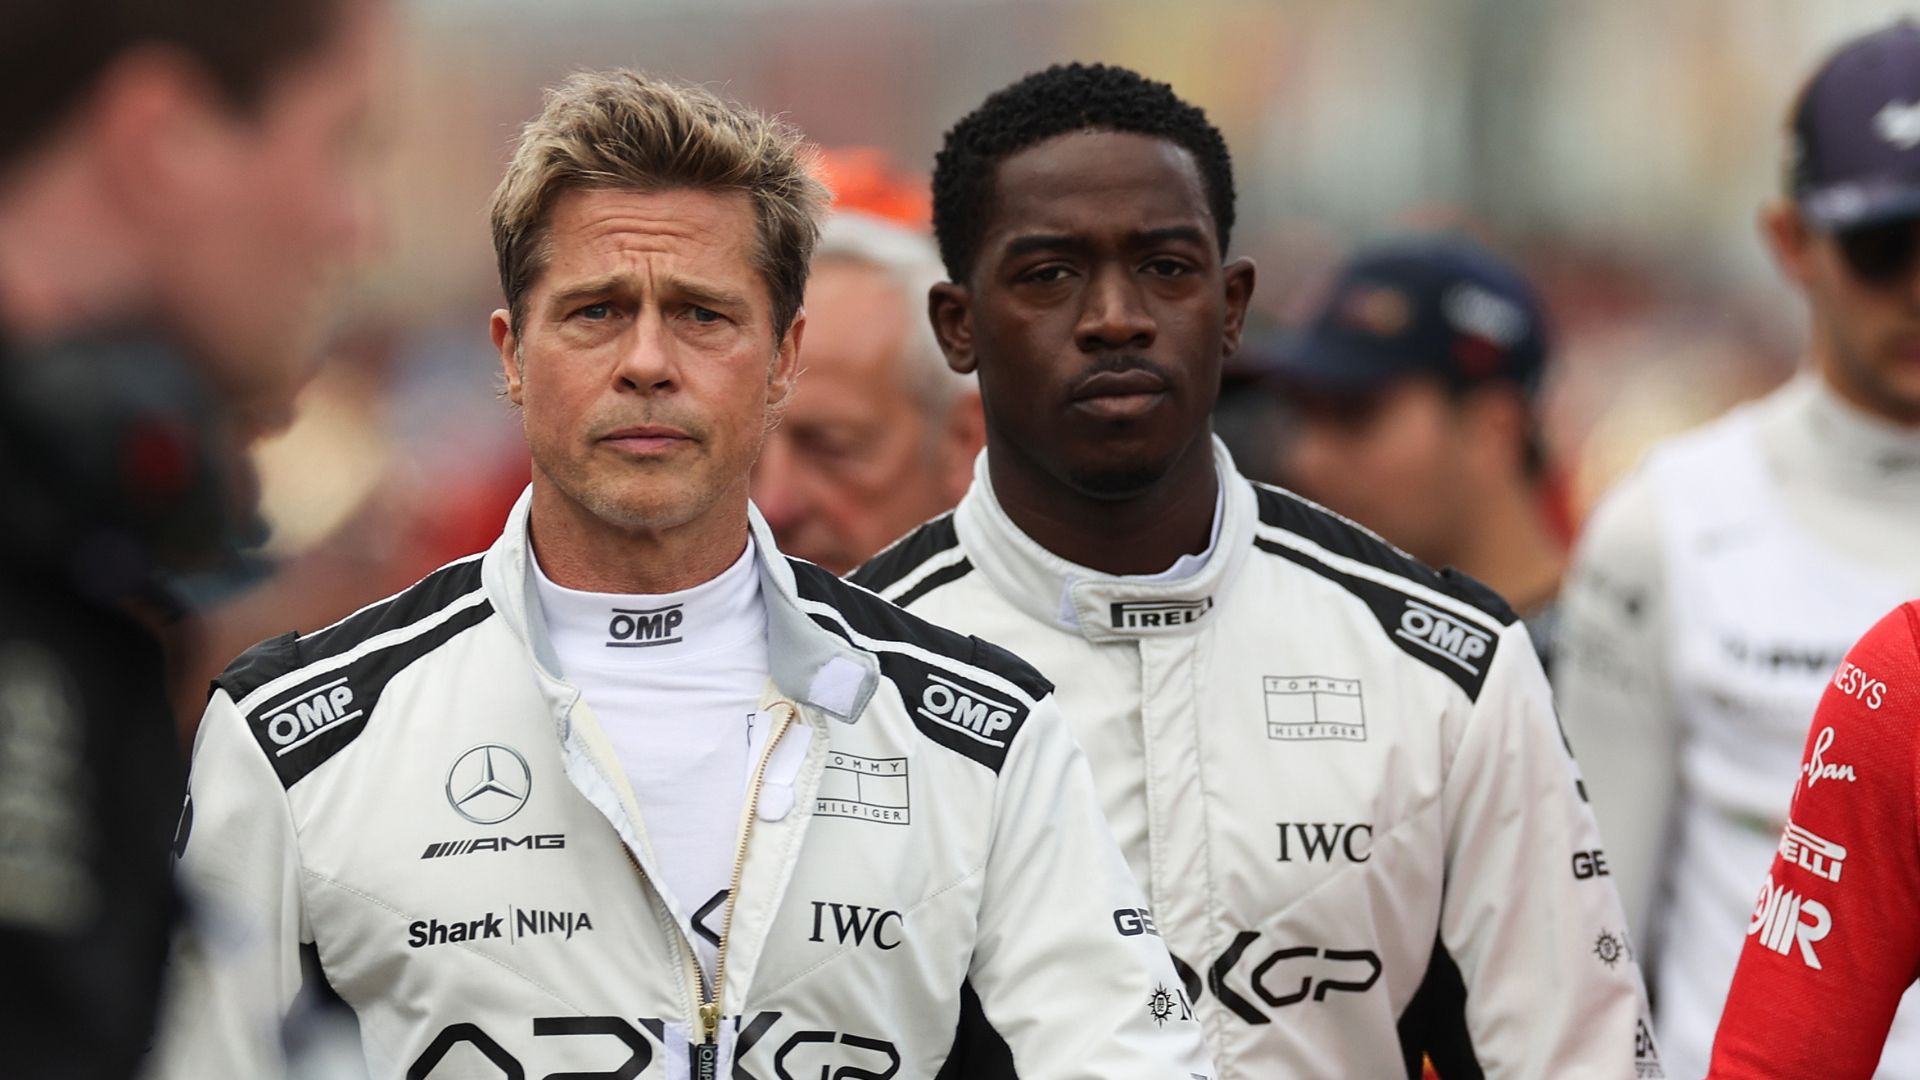 Il film sulla Formula 1 con Brad Pitt e prodotto da Apple, ha una data d'uscita ufficiale